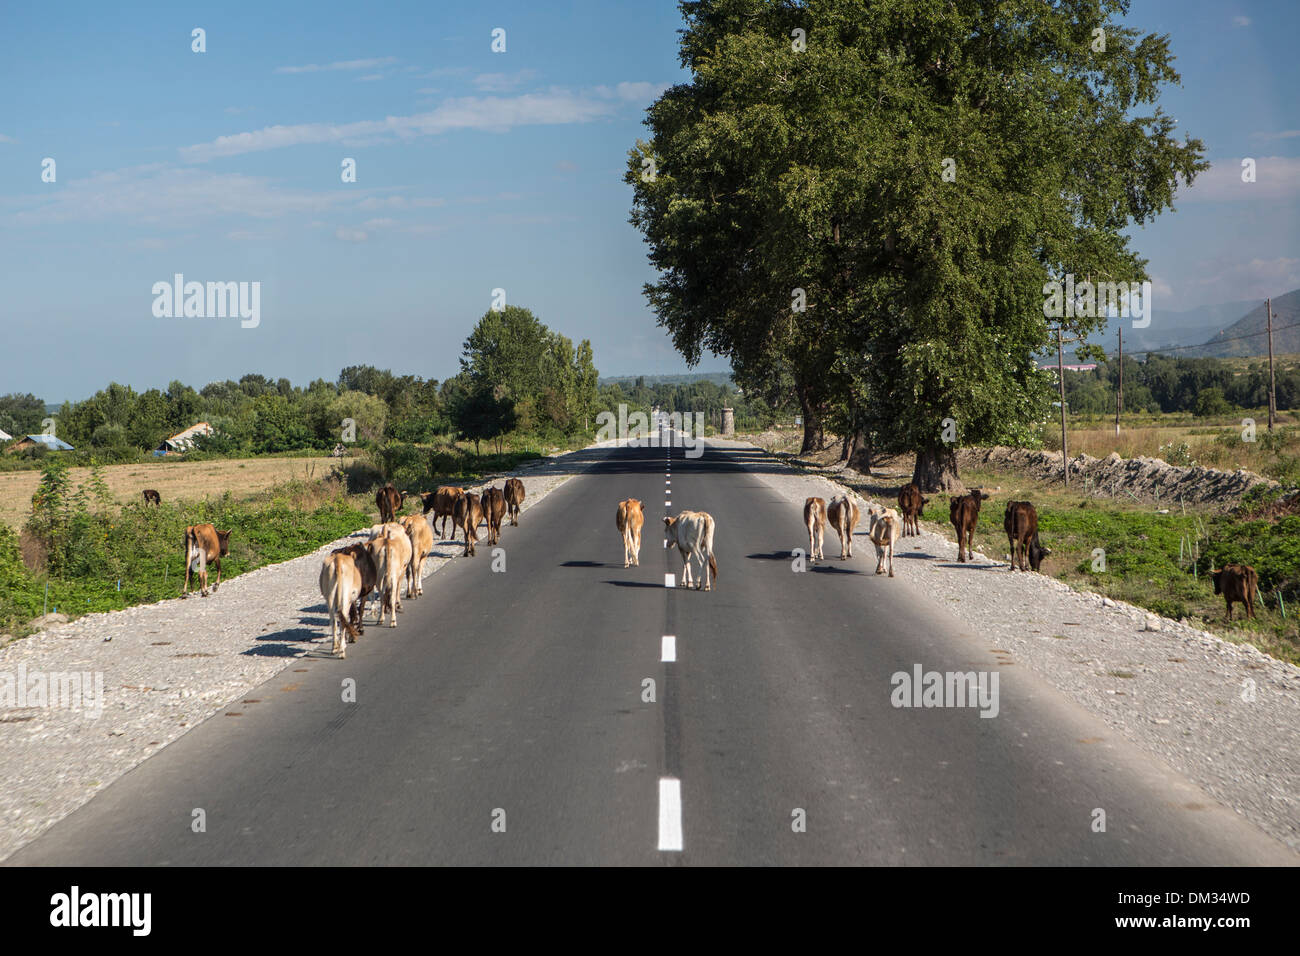 Azerbaijan, Caucasus, Eurasia, Balakan, Border, cows, road, traffic, street, rural Stock Photo